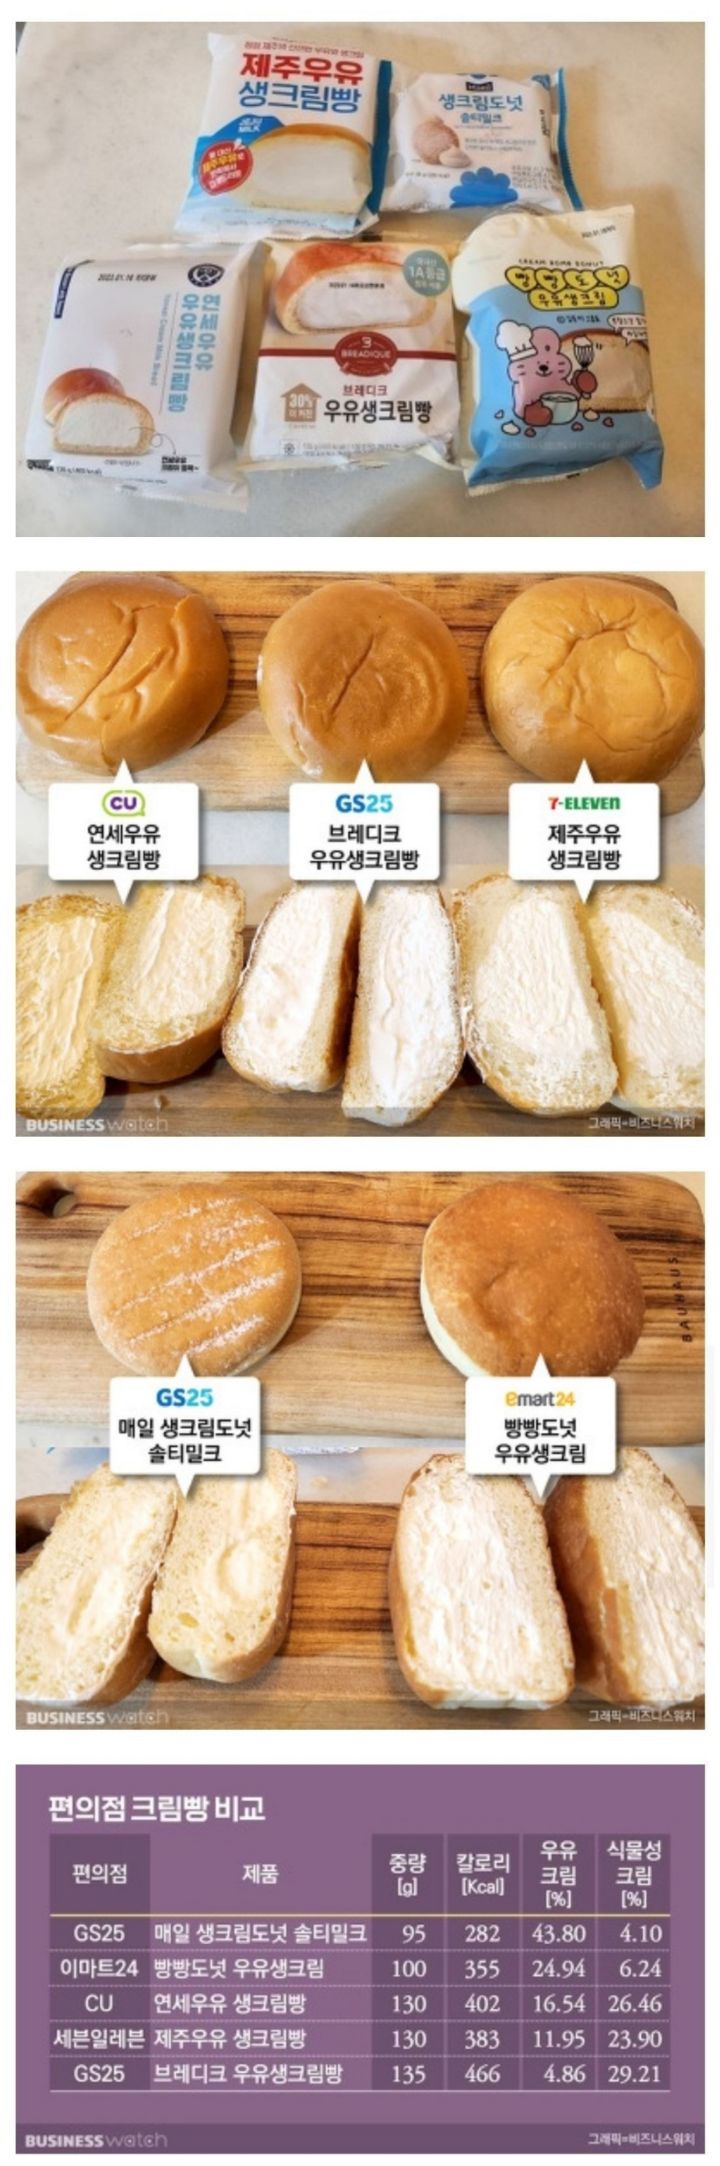 편의점 4사 주력 크림빵 비교.jpg